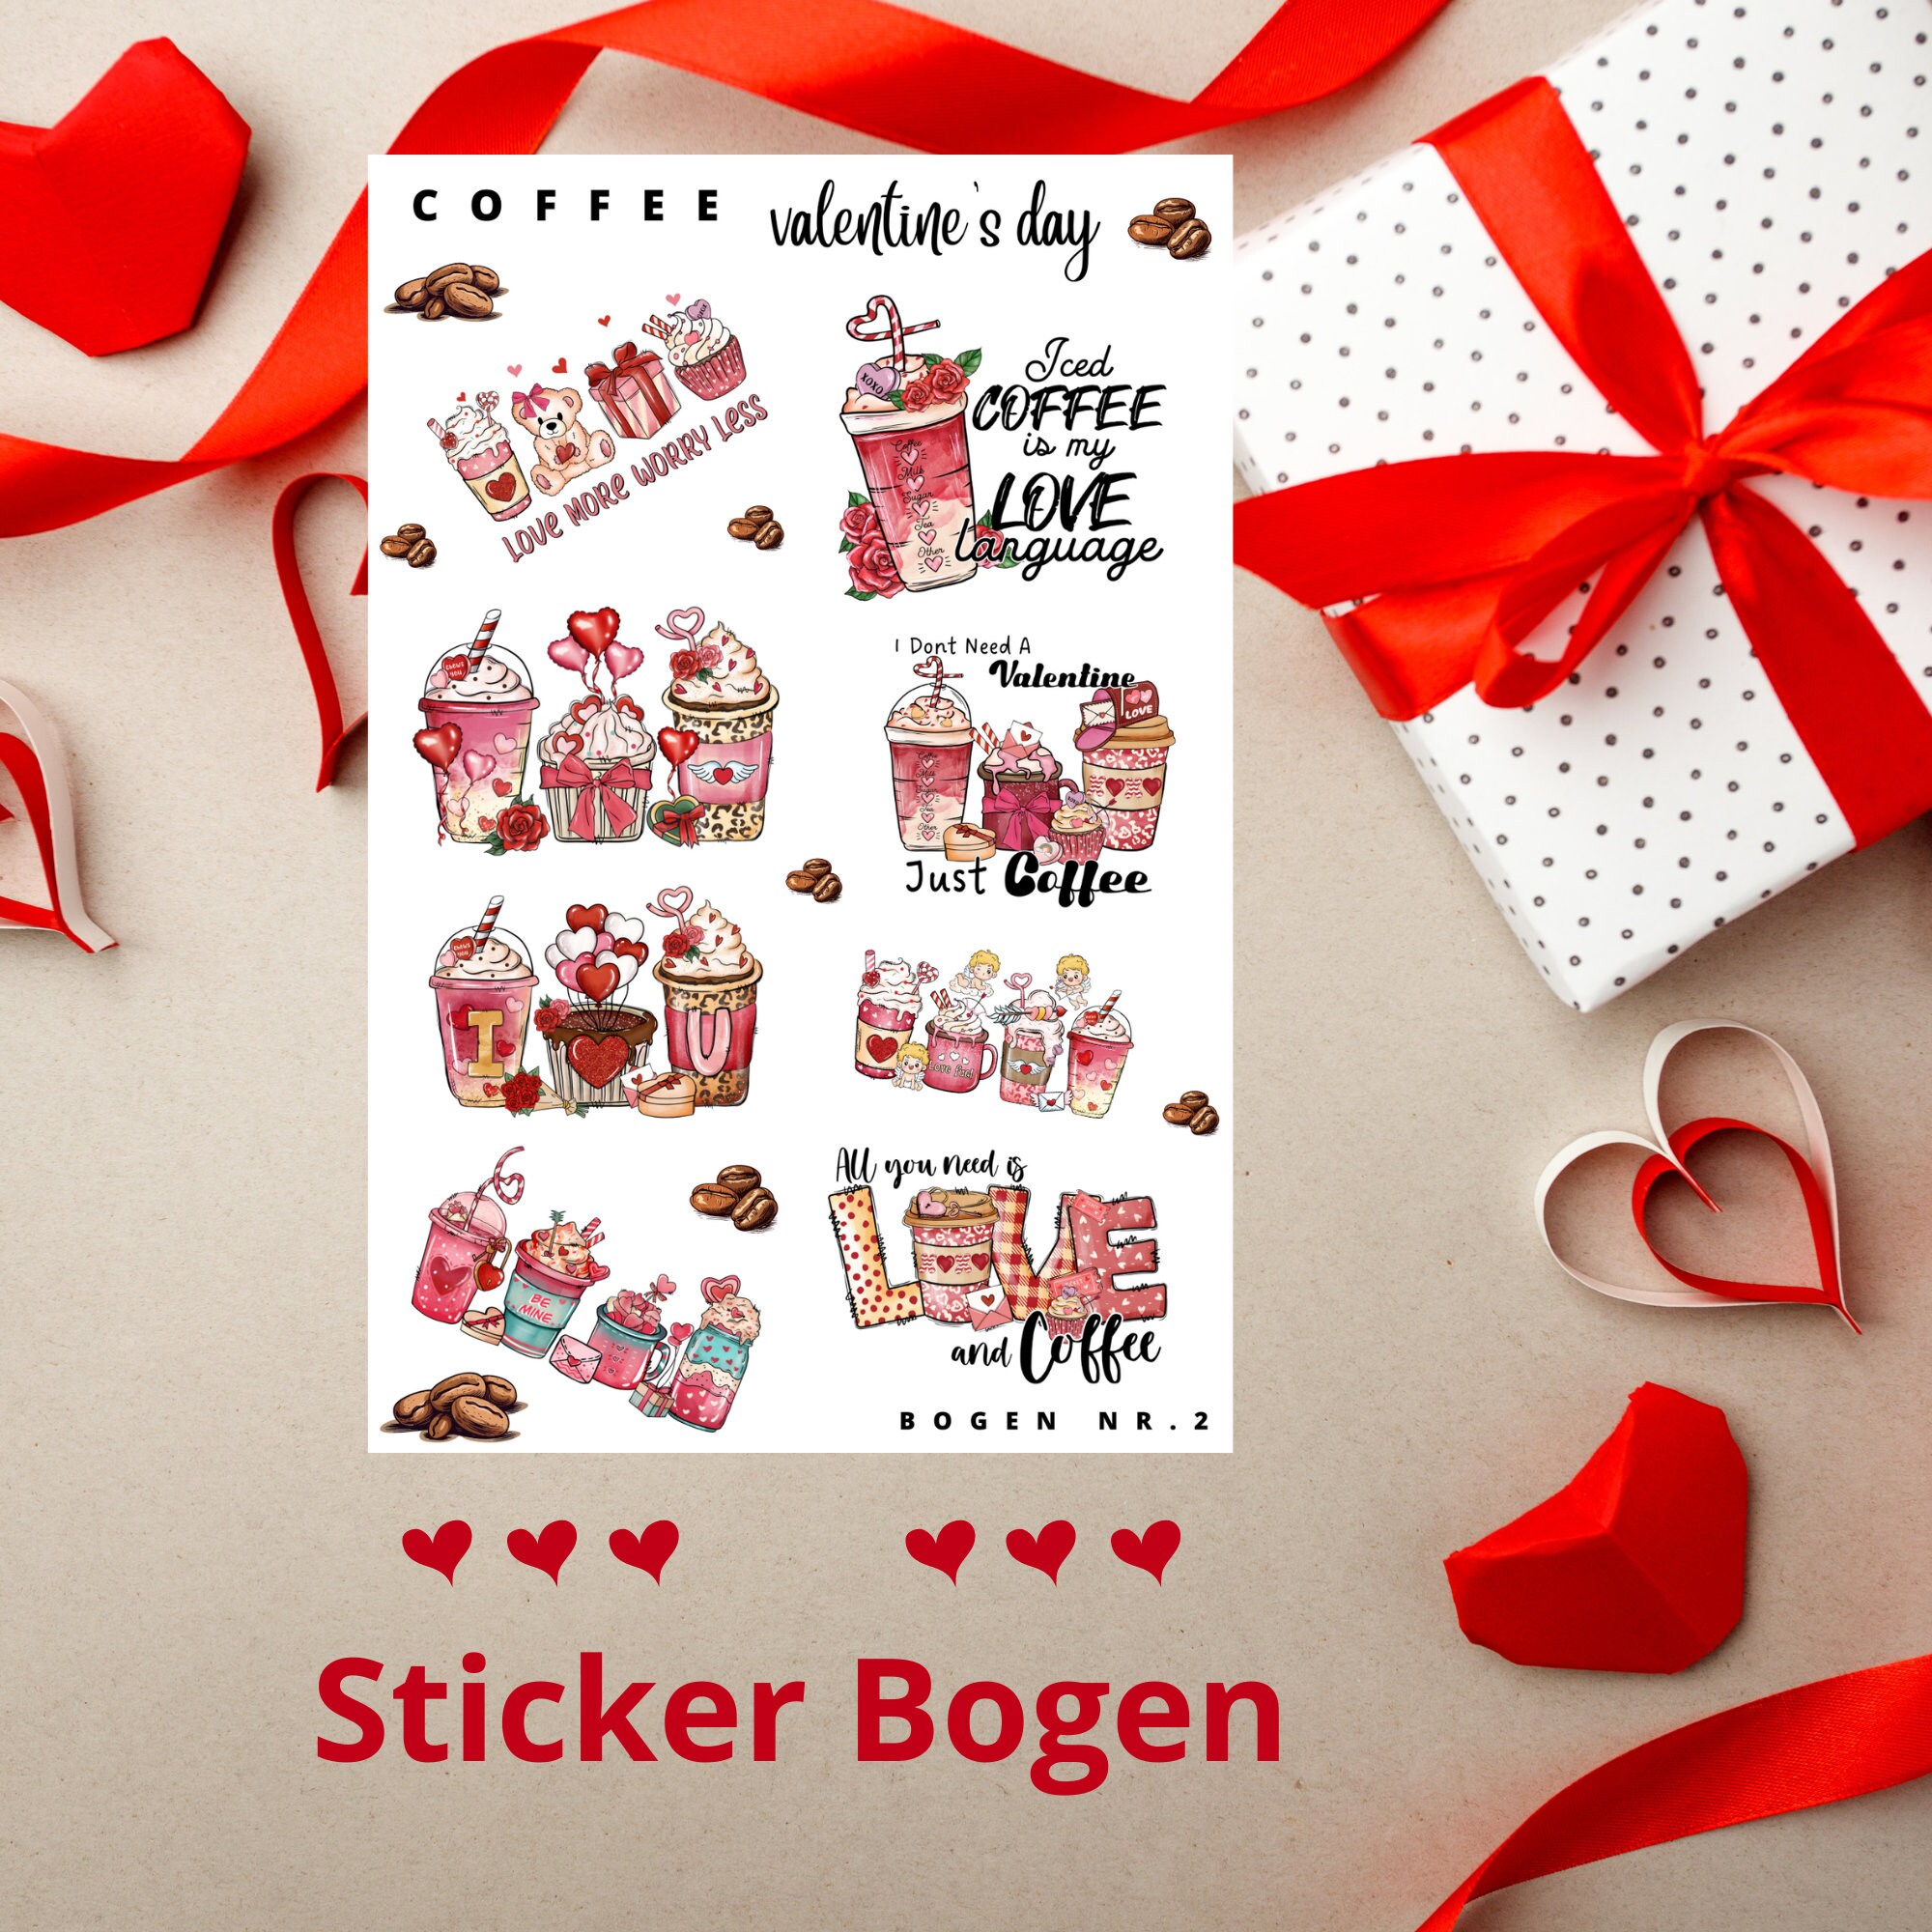 Sticker Bogen - Kaffee Valentinstag | Sticker Set - Journal Sticker - Aufkleber Stickerbogen 